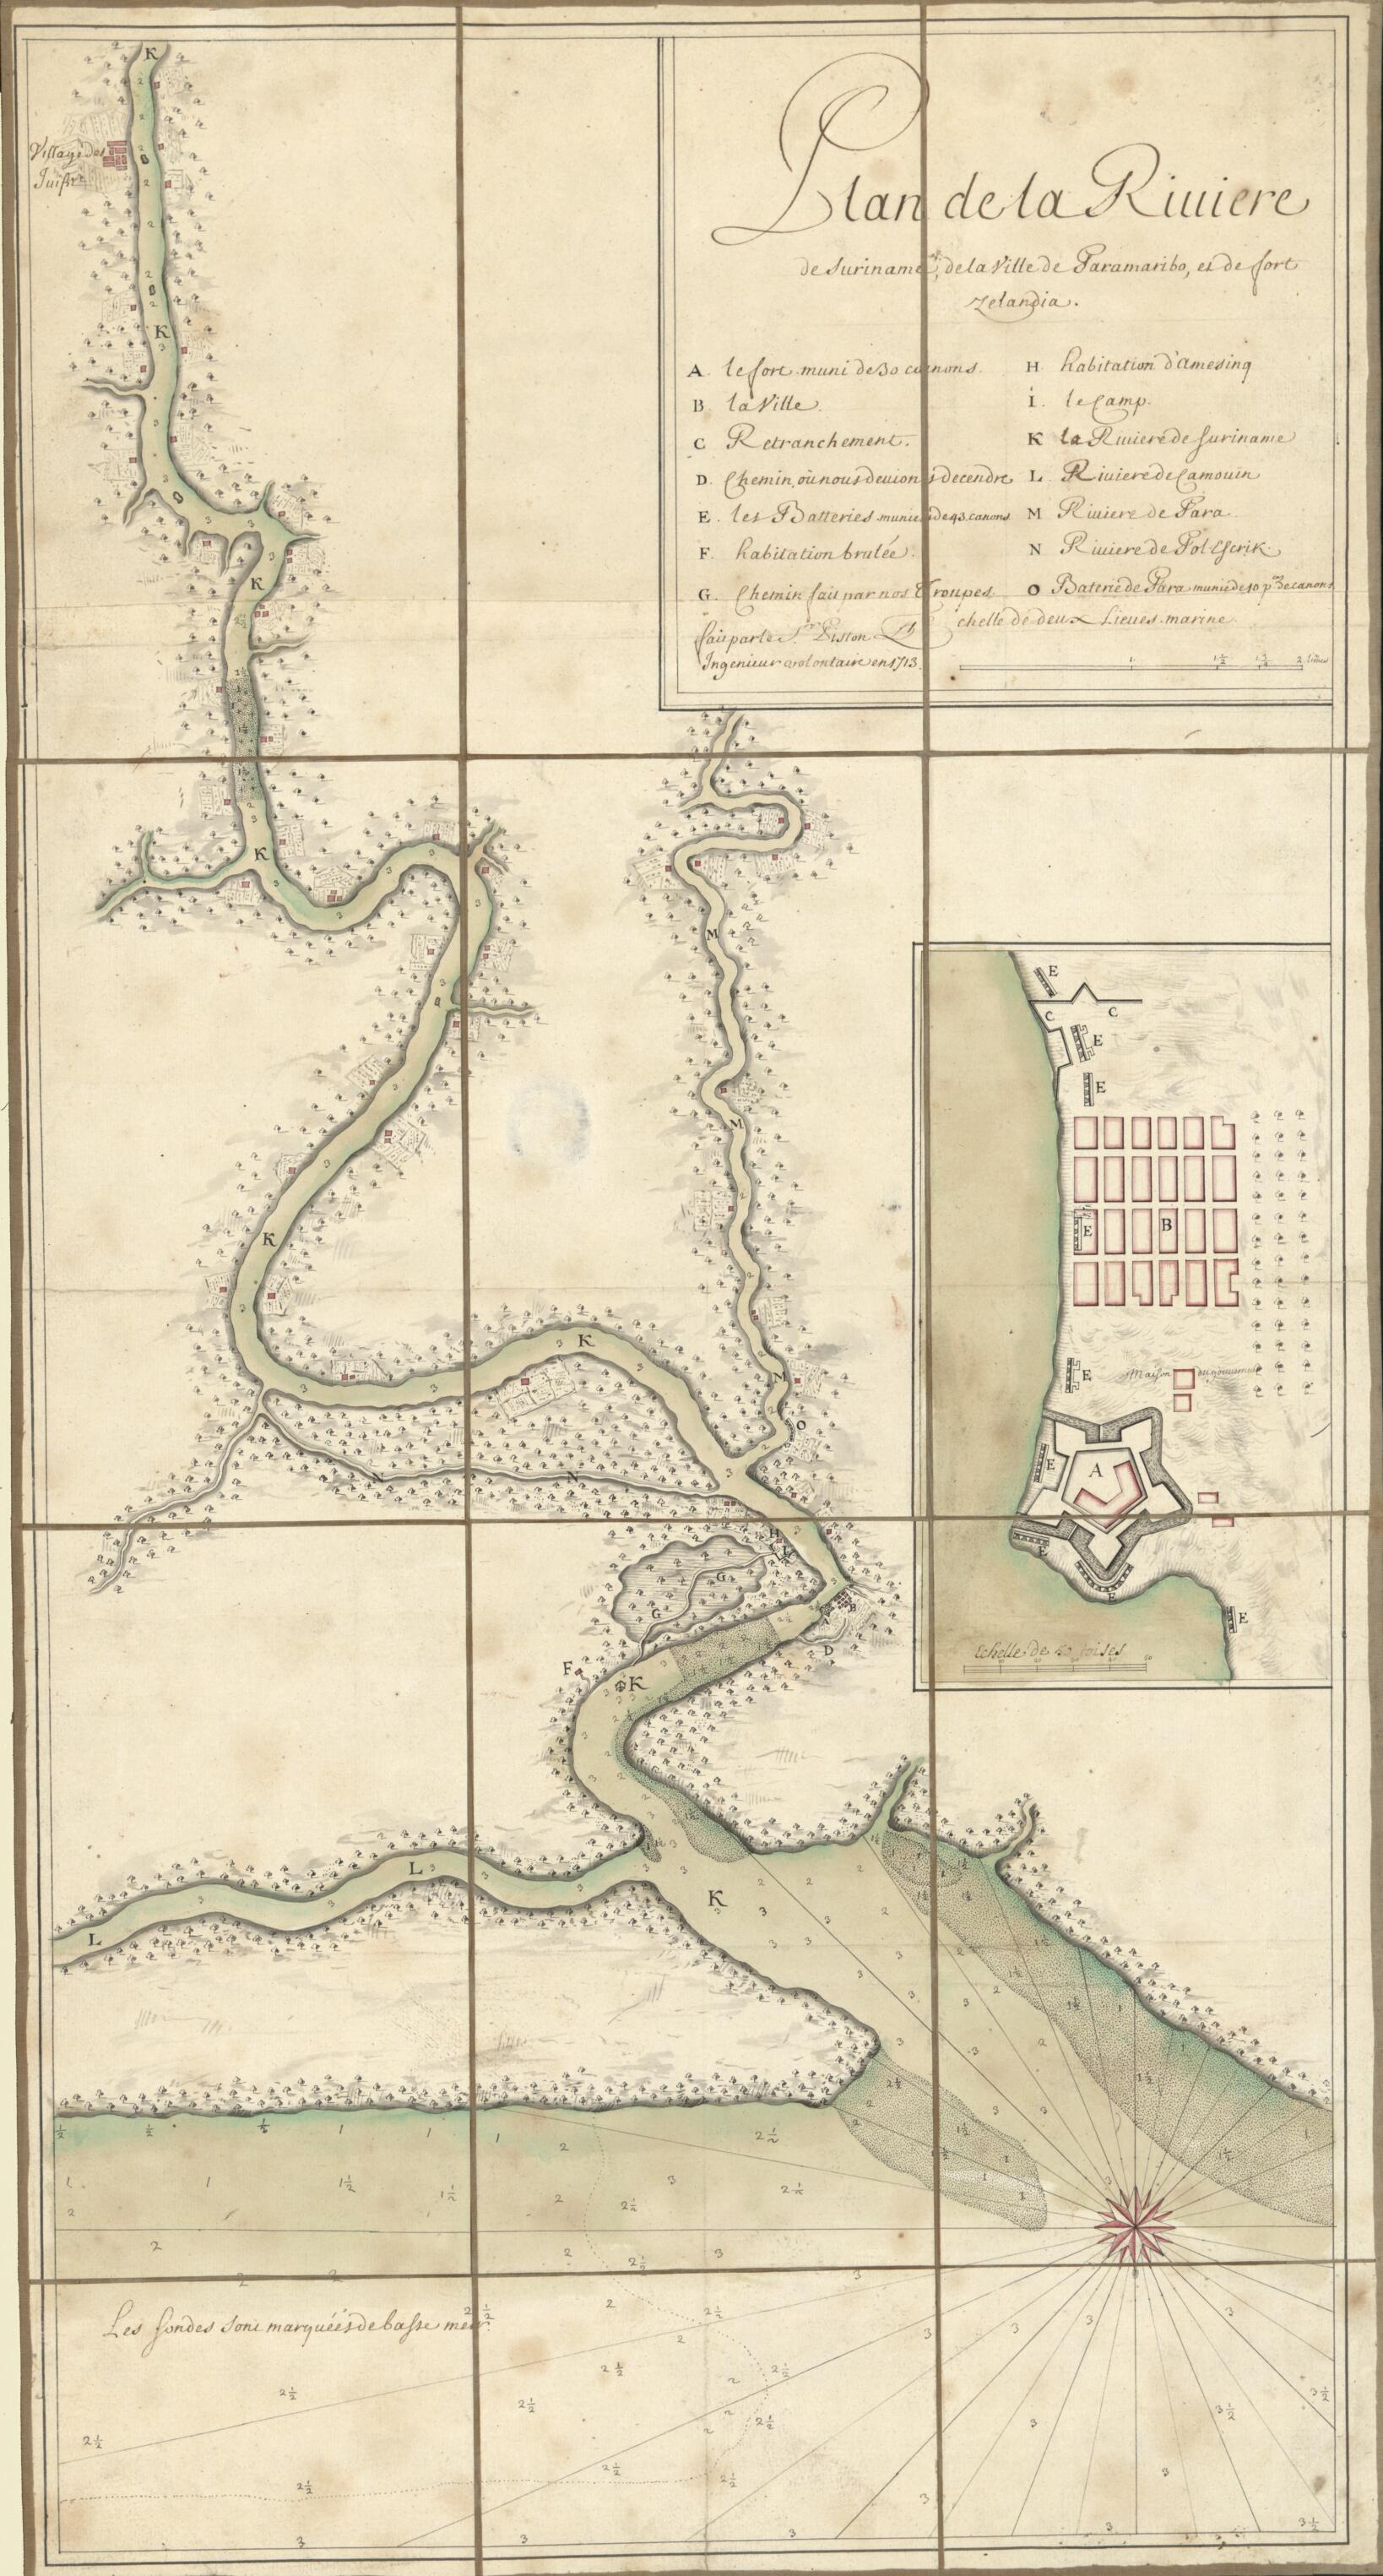 This old map of Plan De La Riuiere De Suriname, De La Ville De Paramaribo, Es De Fort Zelandia. (Carte De La Rivière.. De La Ville De Paramaribo) from 1713 was created by Charles Picquet in 1713